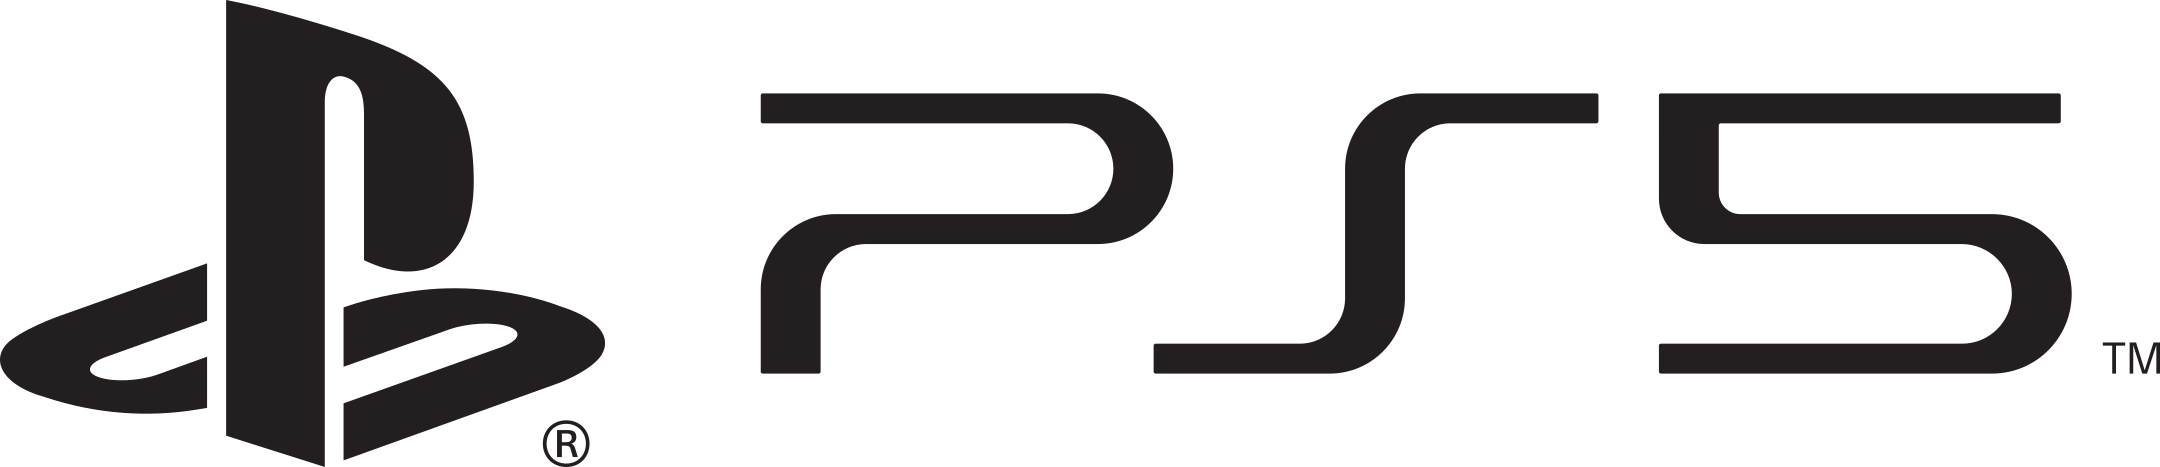 ps5 playstation 5 logo 1 - PS5 Logo - PlayStation 5 Logo